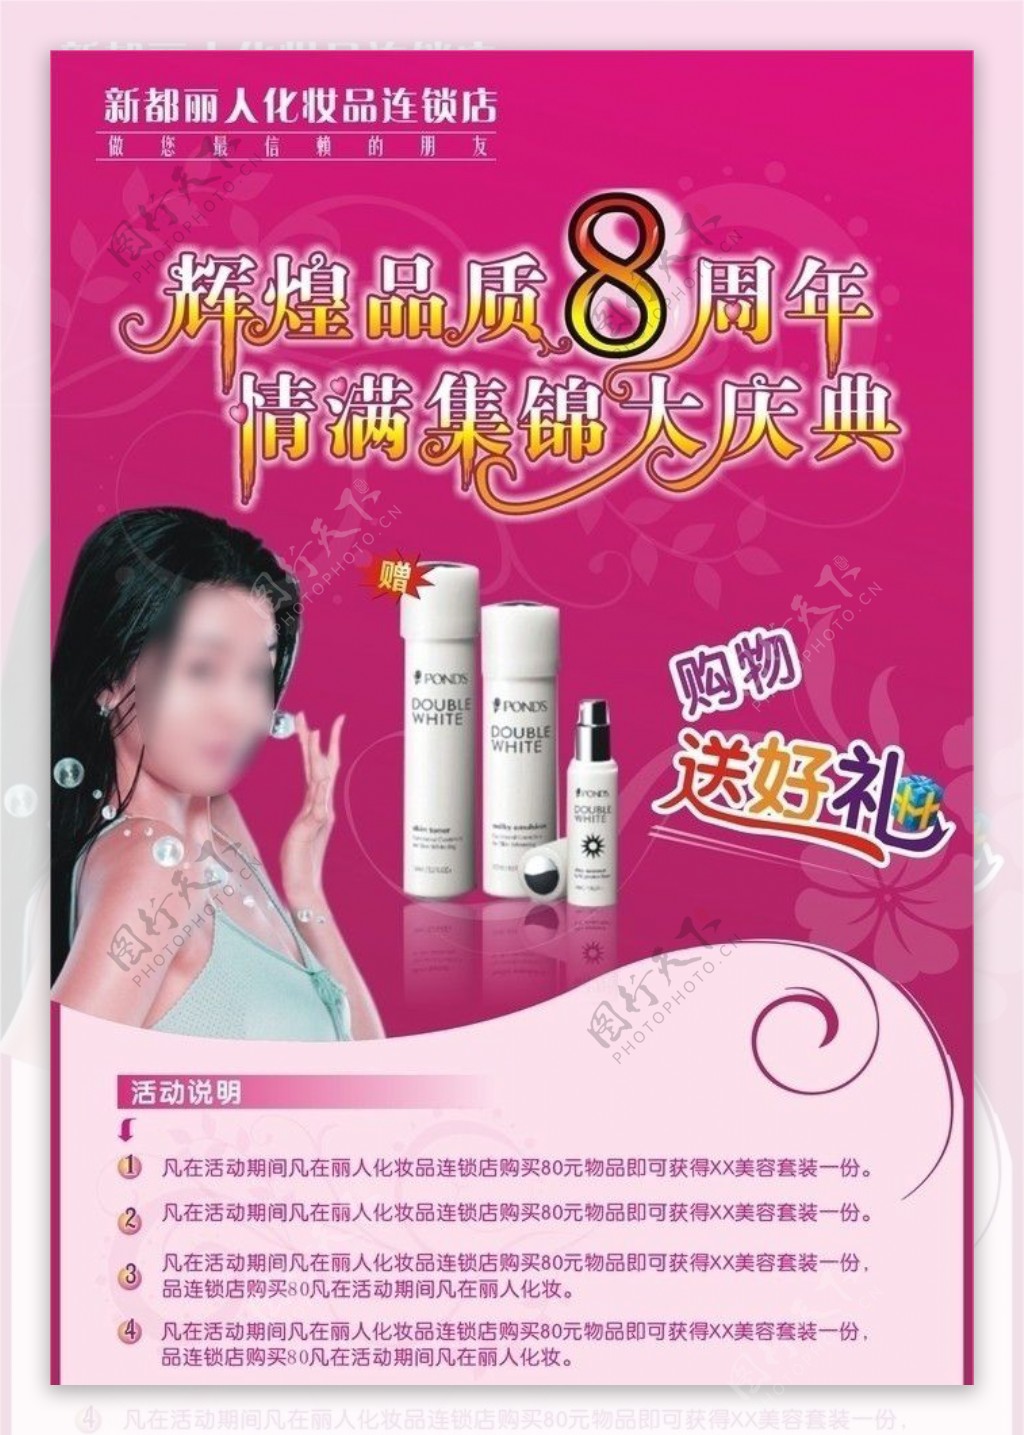 化妆品广告设计素材图片